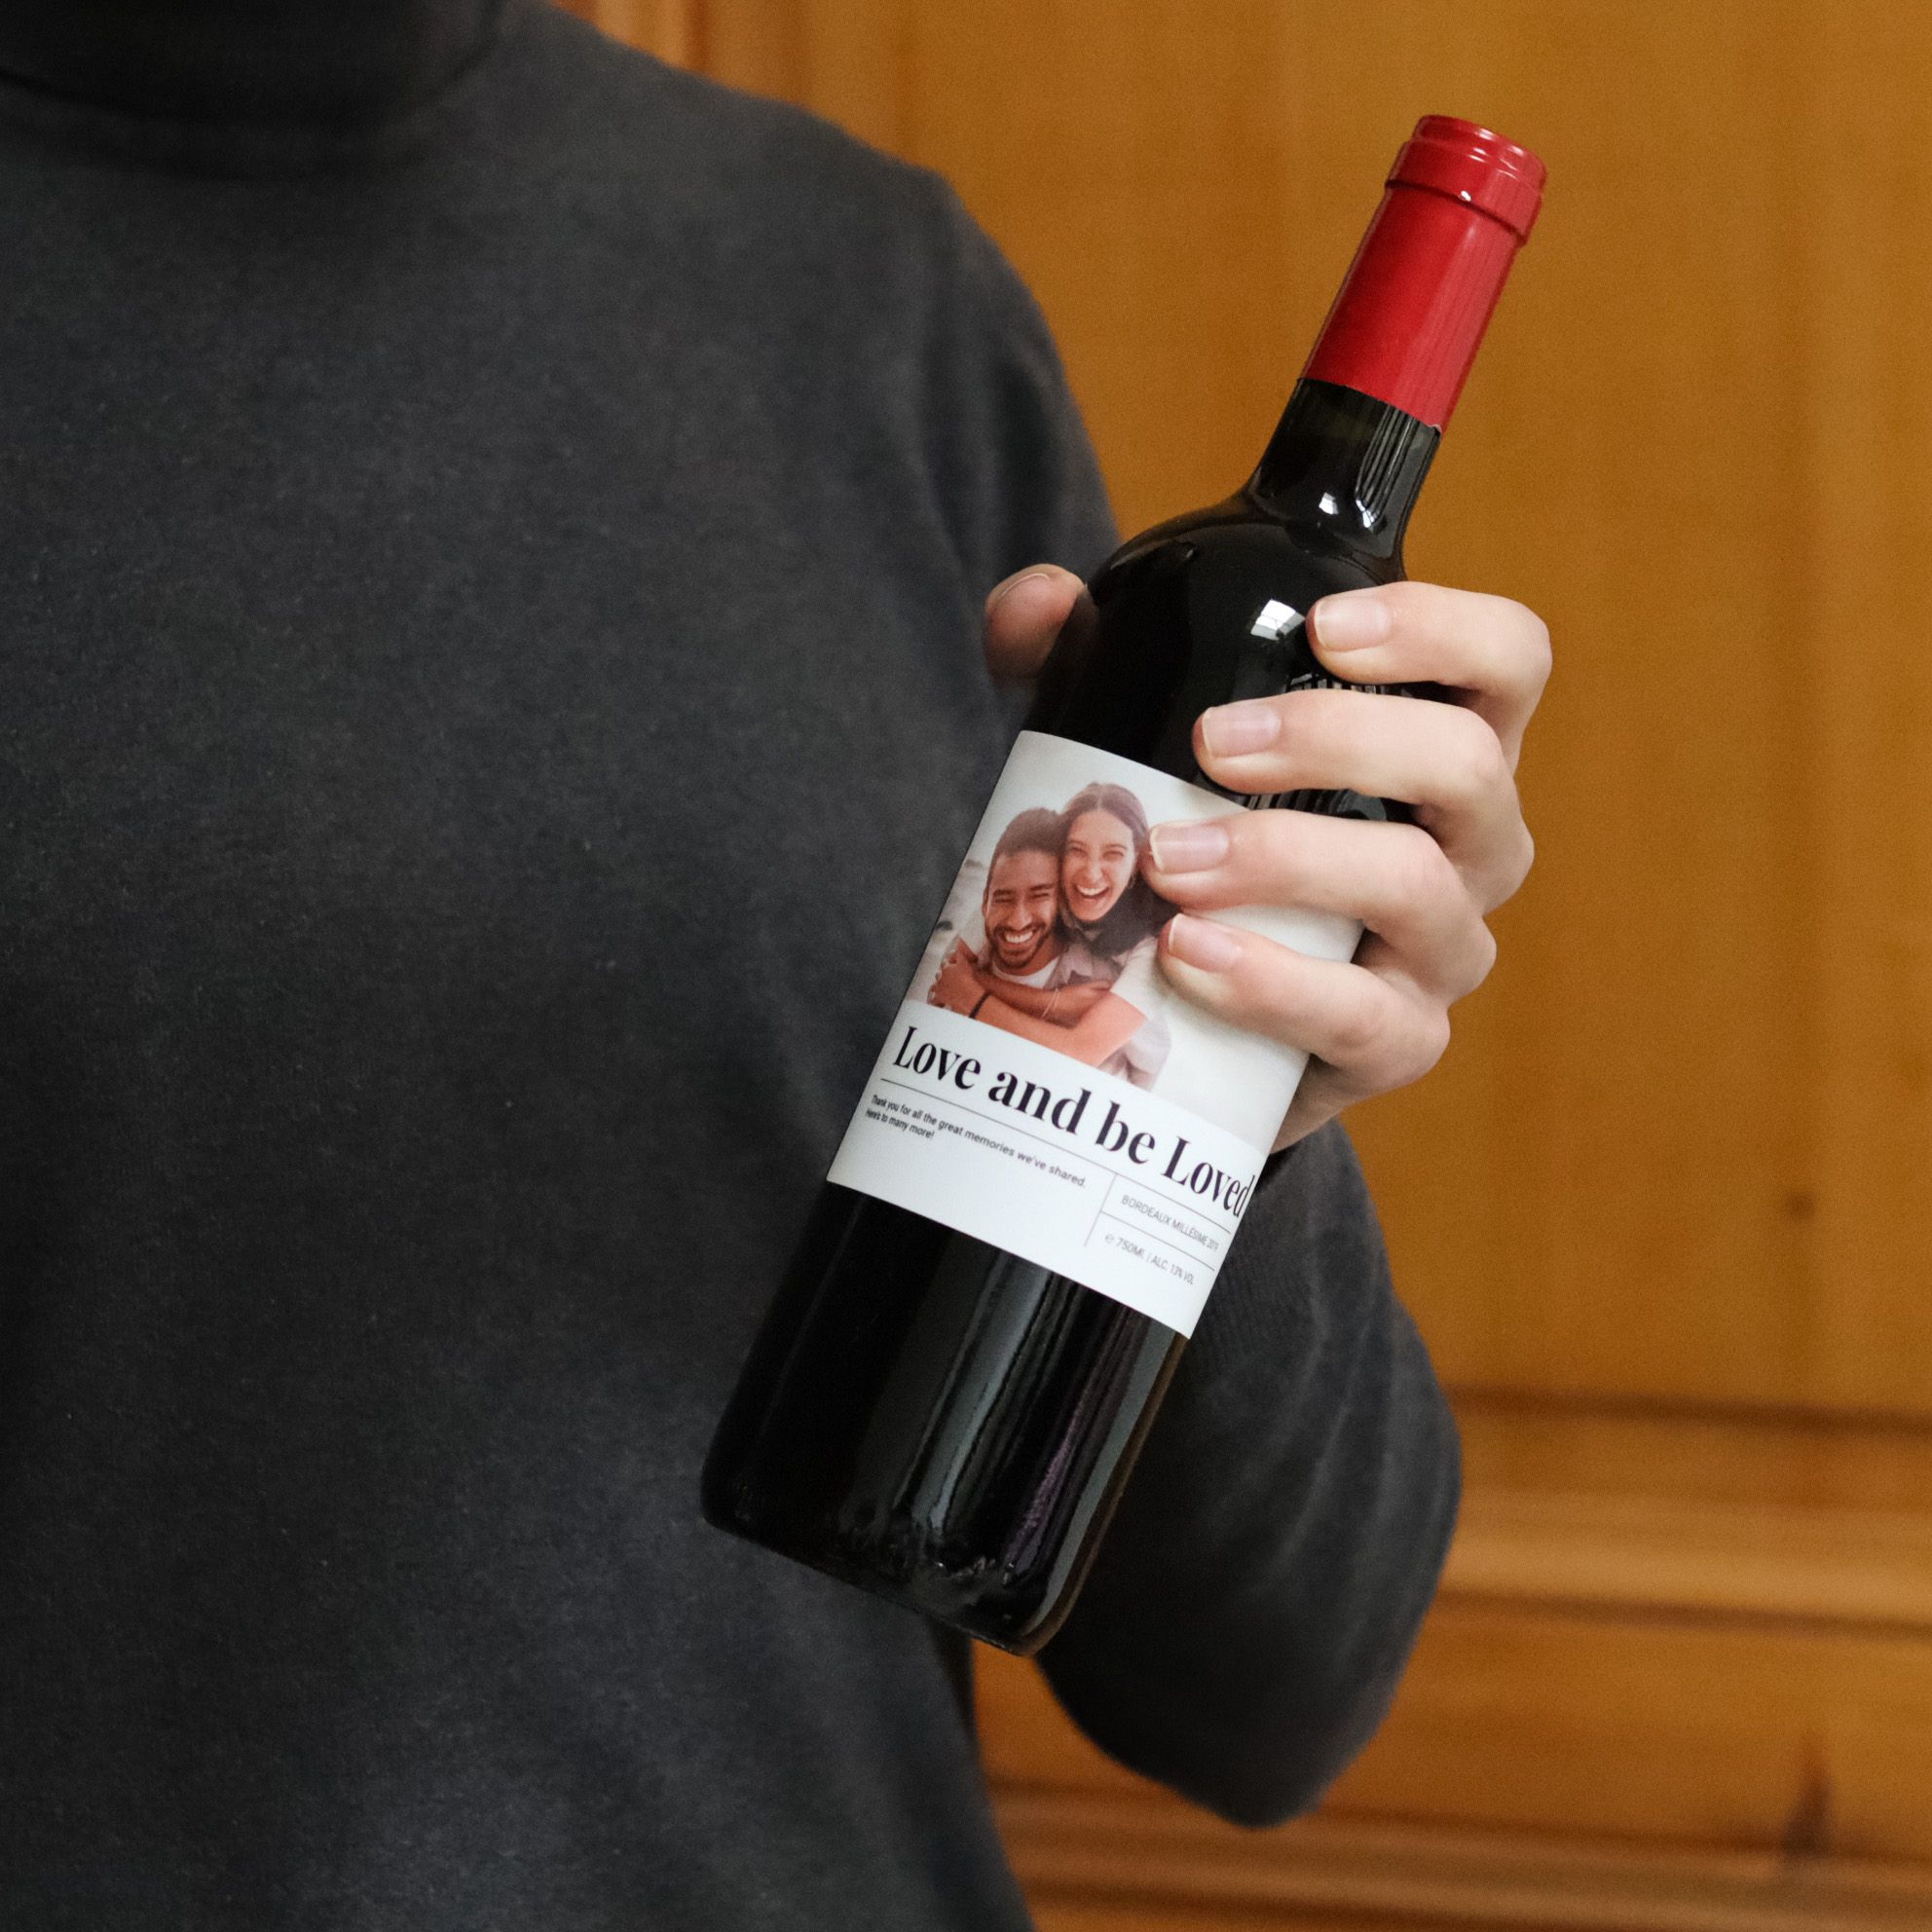 Vin Rouge de France - Ma Bouteille à personnaliser